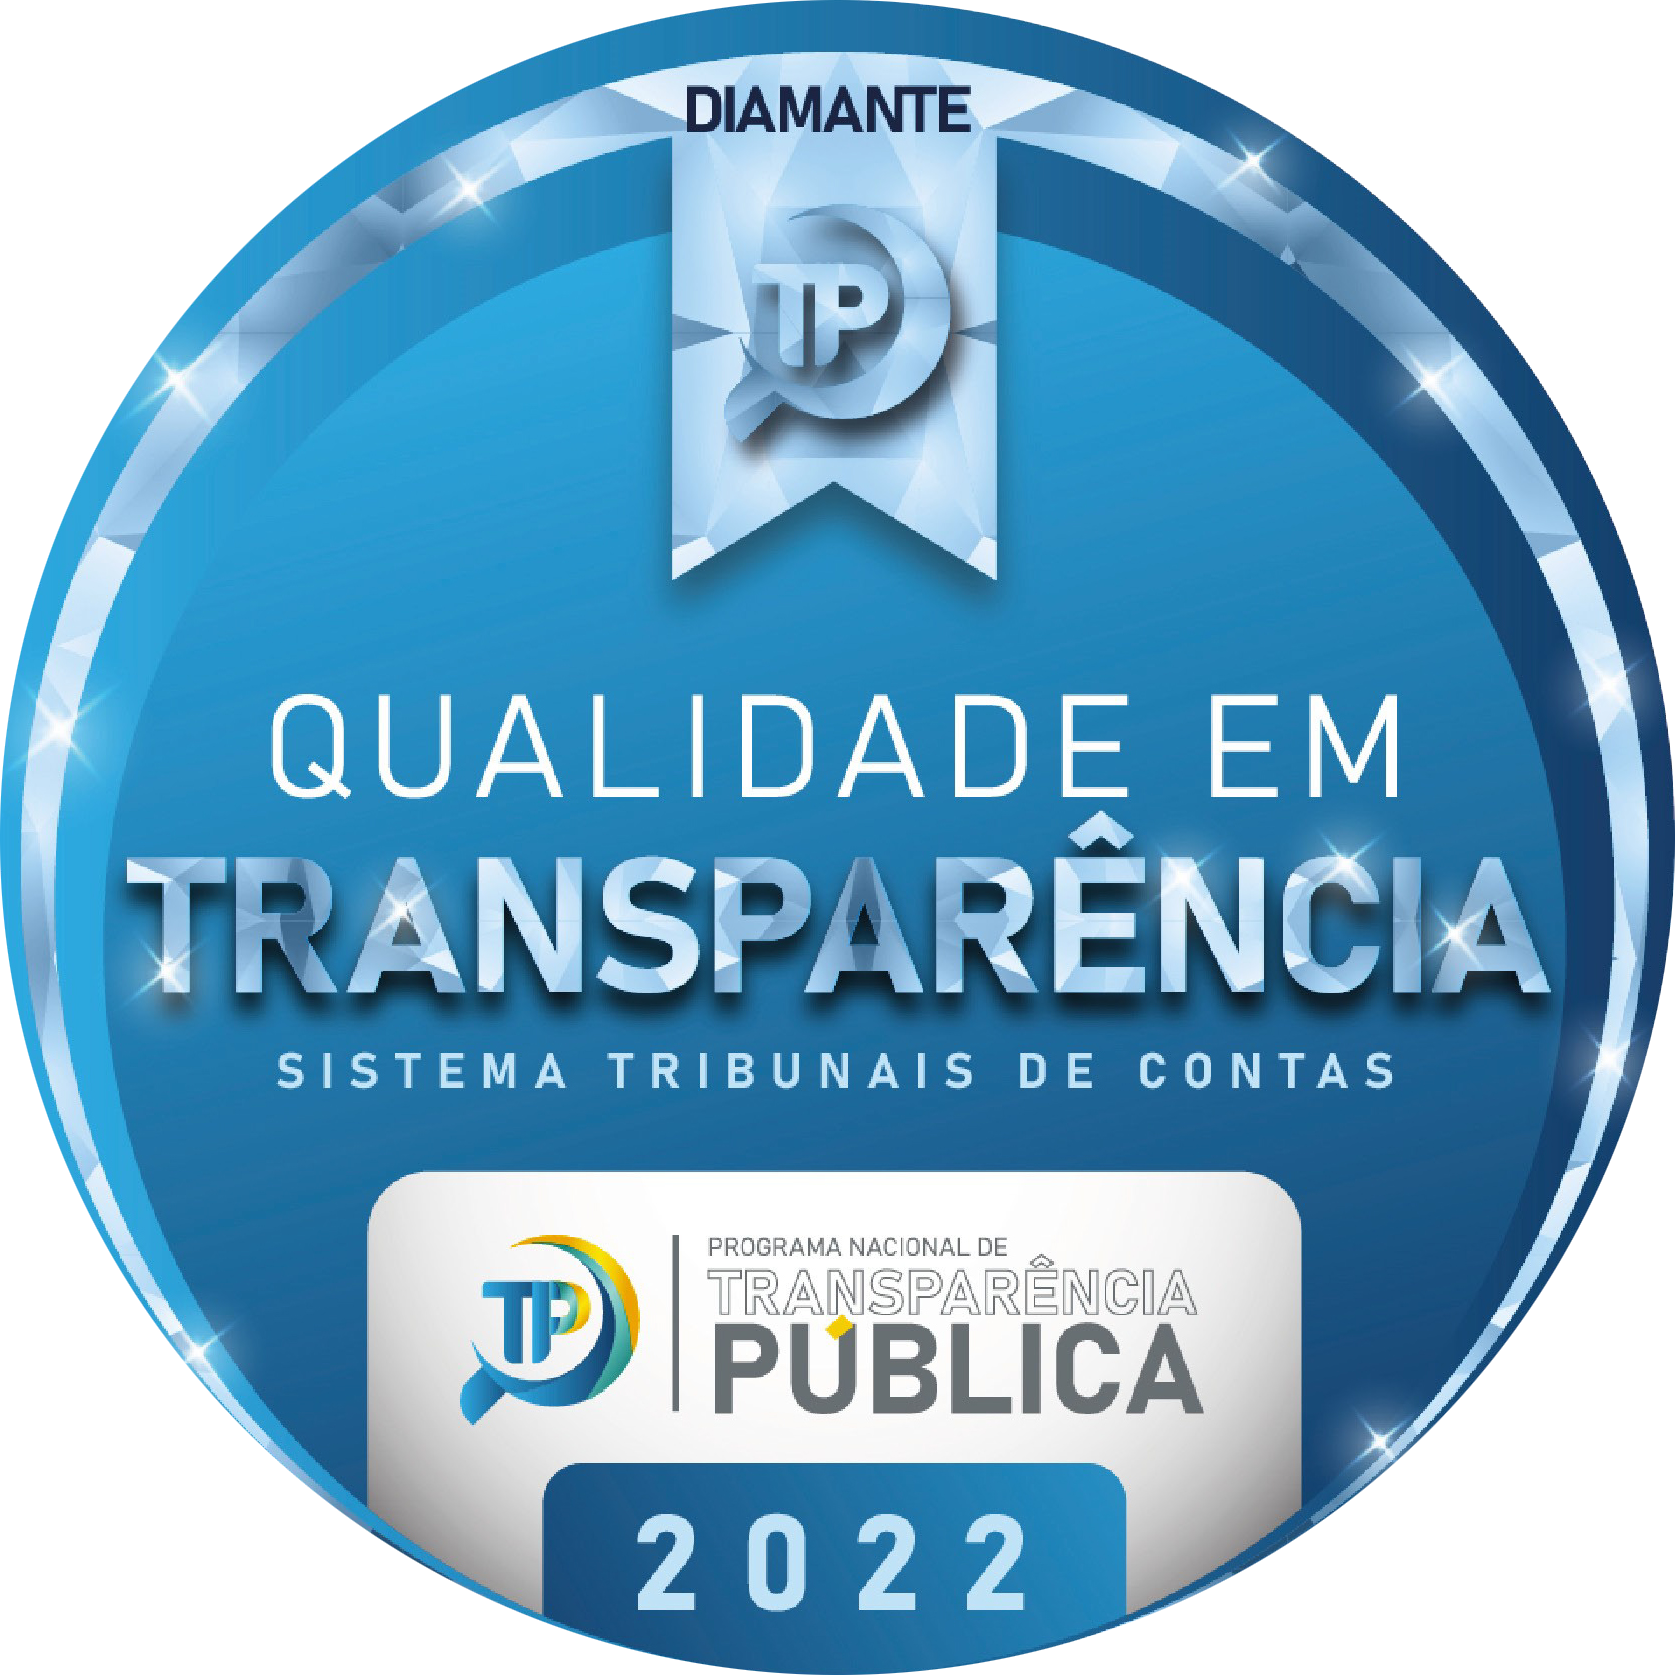 Selo em formato circular, composto pelas cores azul e cinza, pelo logo TP, sobre uma bandeira, e pelos textos "Diamante", "Qualidade em Transparência", "Sistema Tribunais de Contas", "Programa Nacional de Transparência Pública" e "2022".